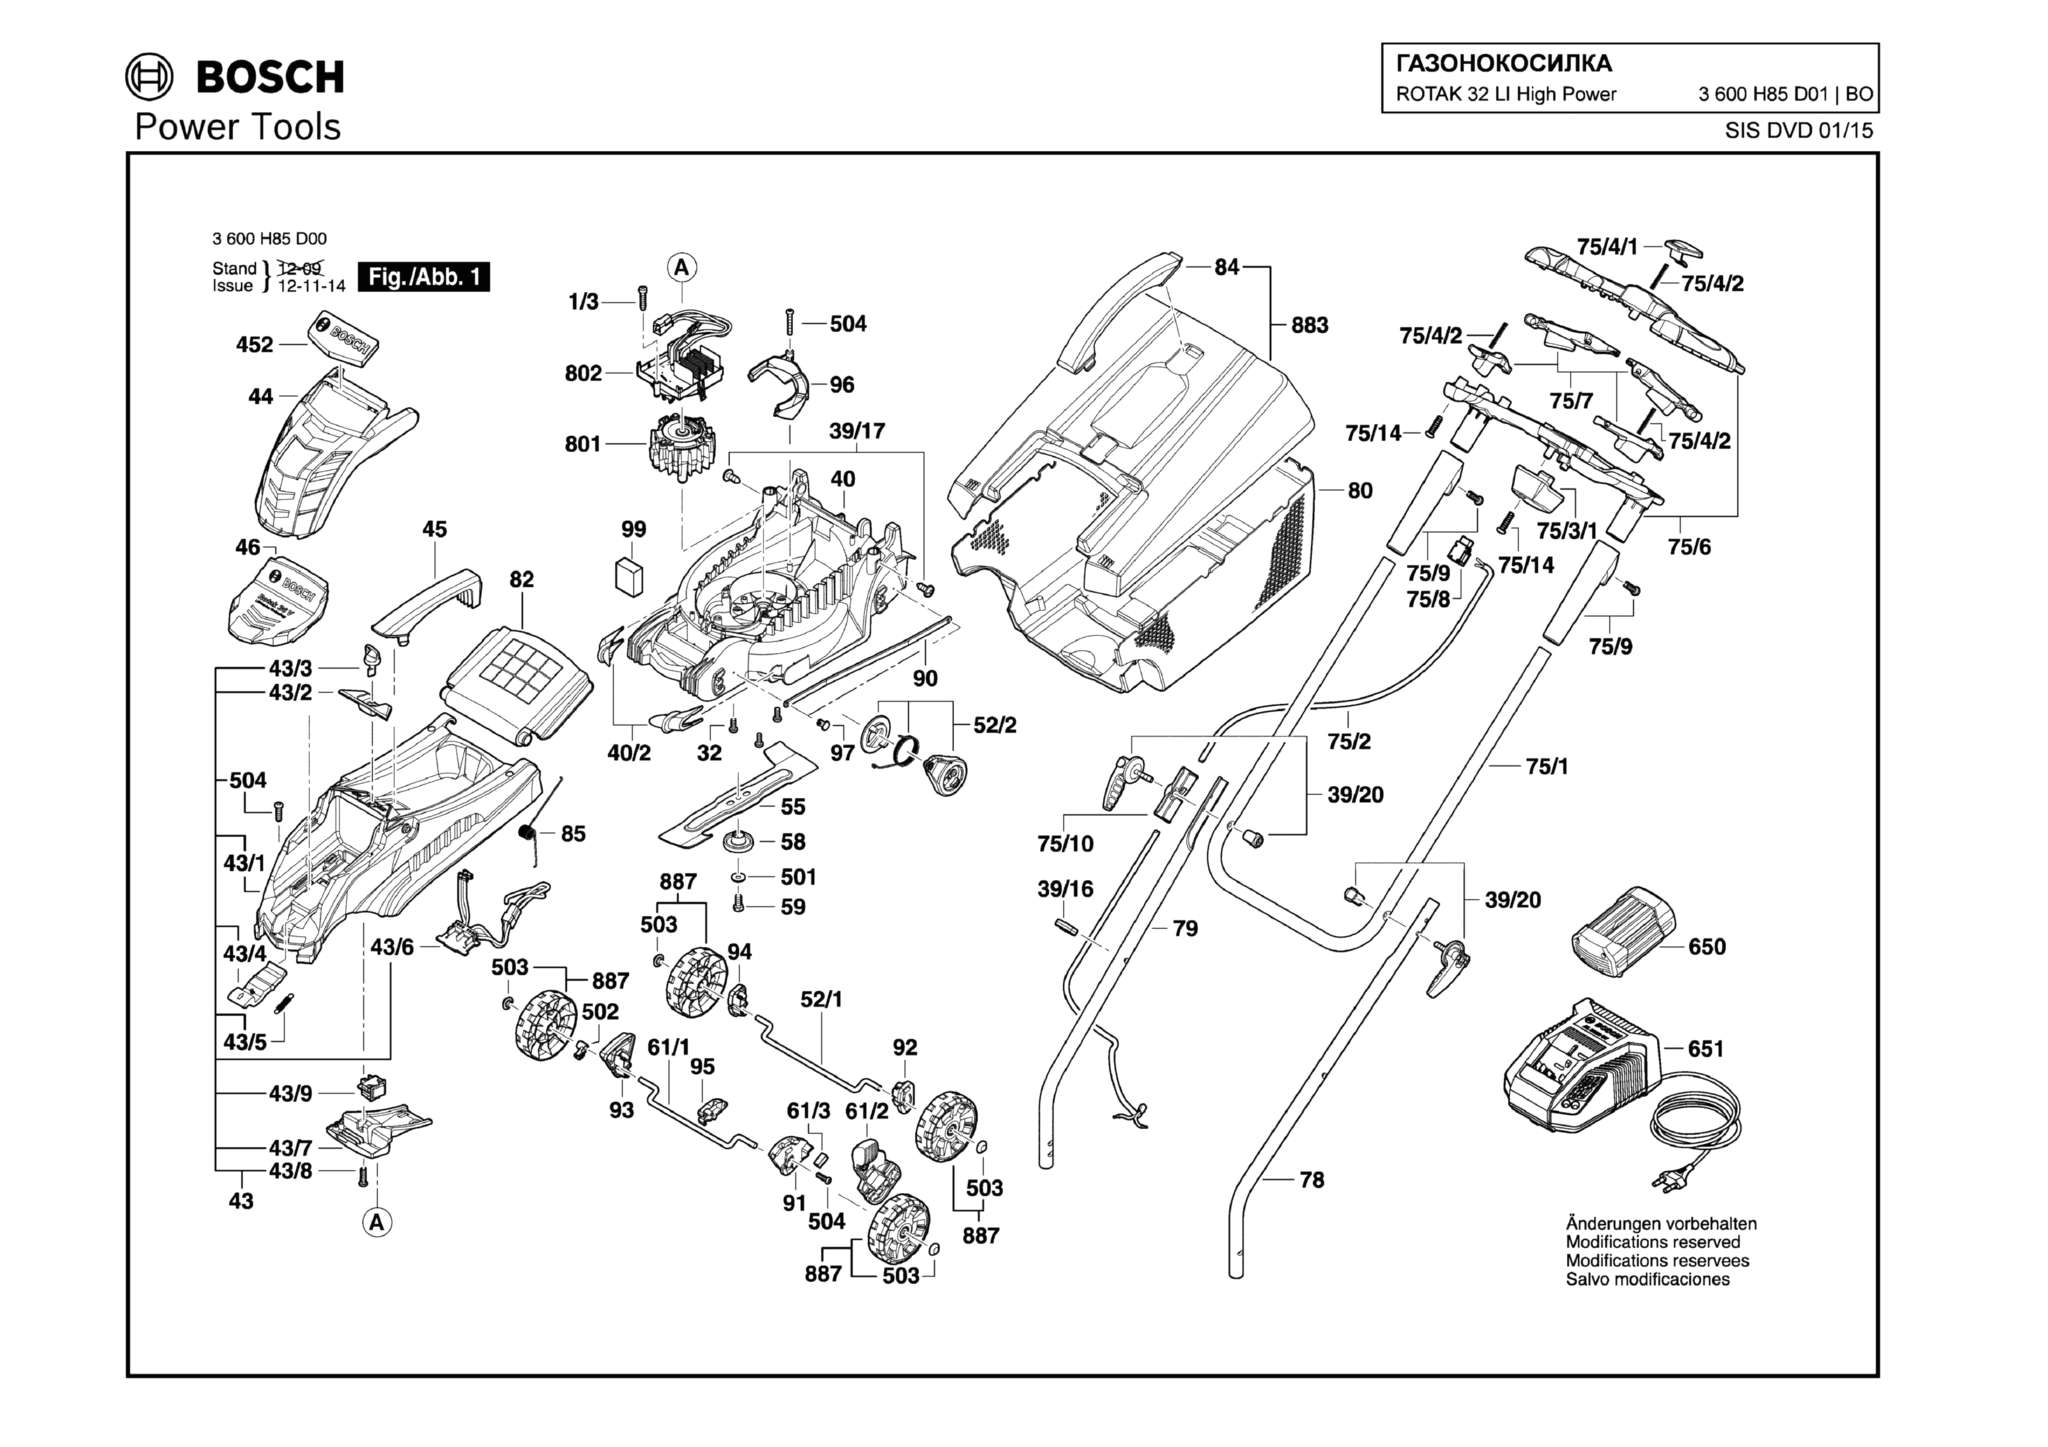 Запчасти, схема и деталировка Bosch ROTAK 32 LI HIGH POWER (ТИП 3600H85D01)